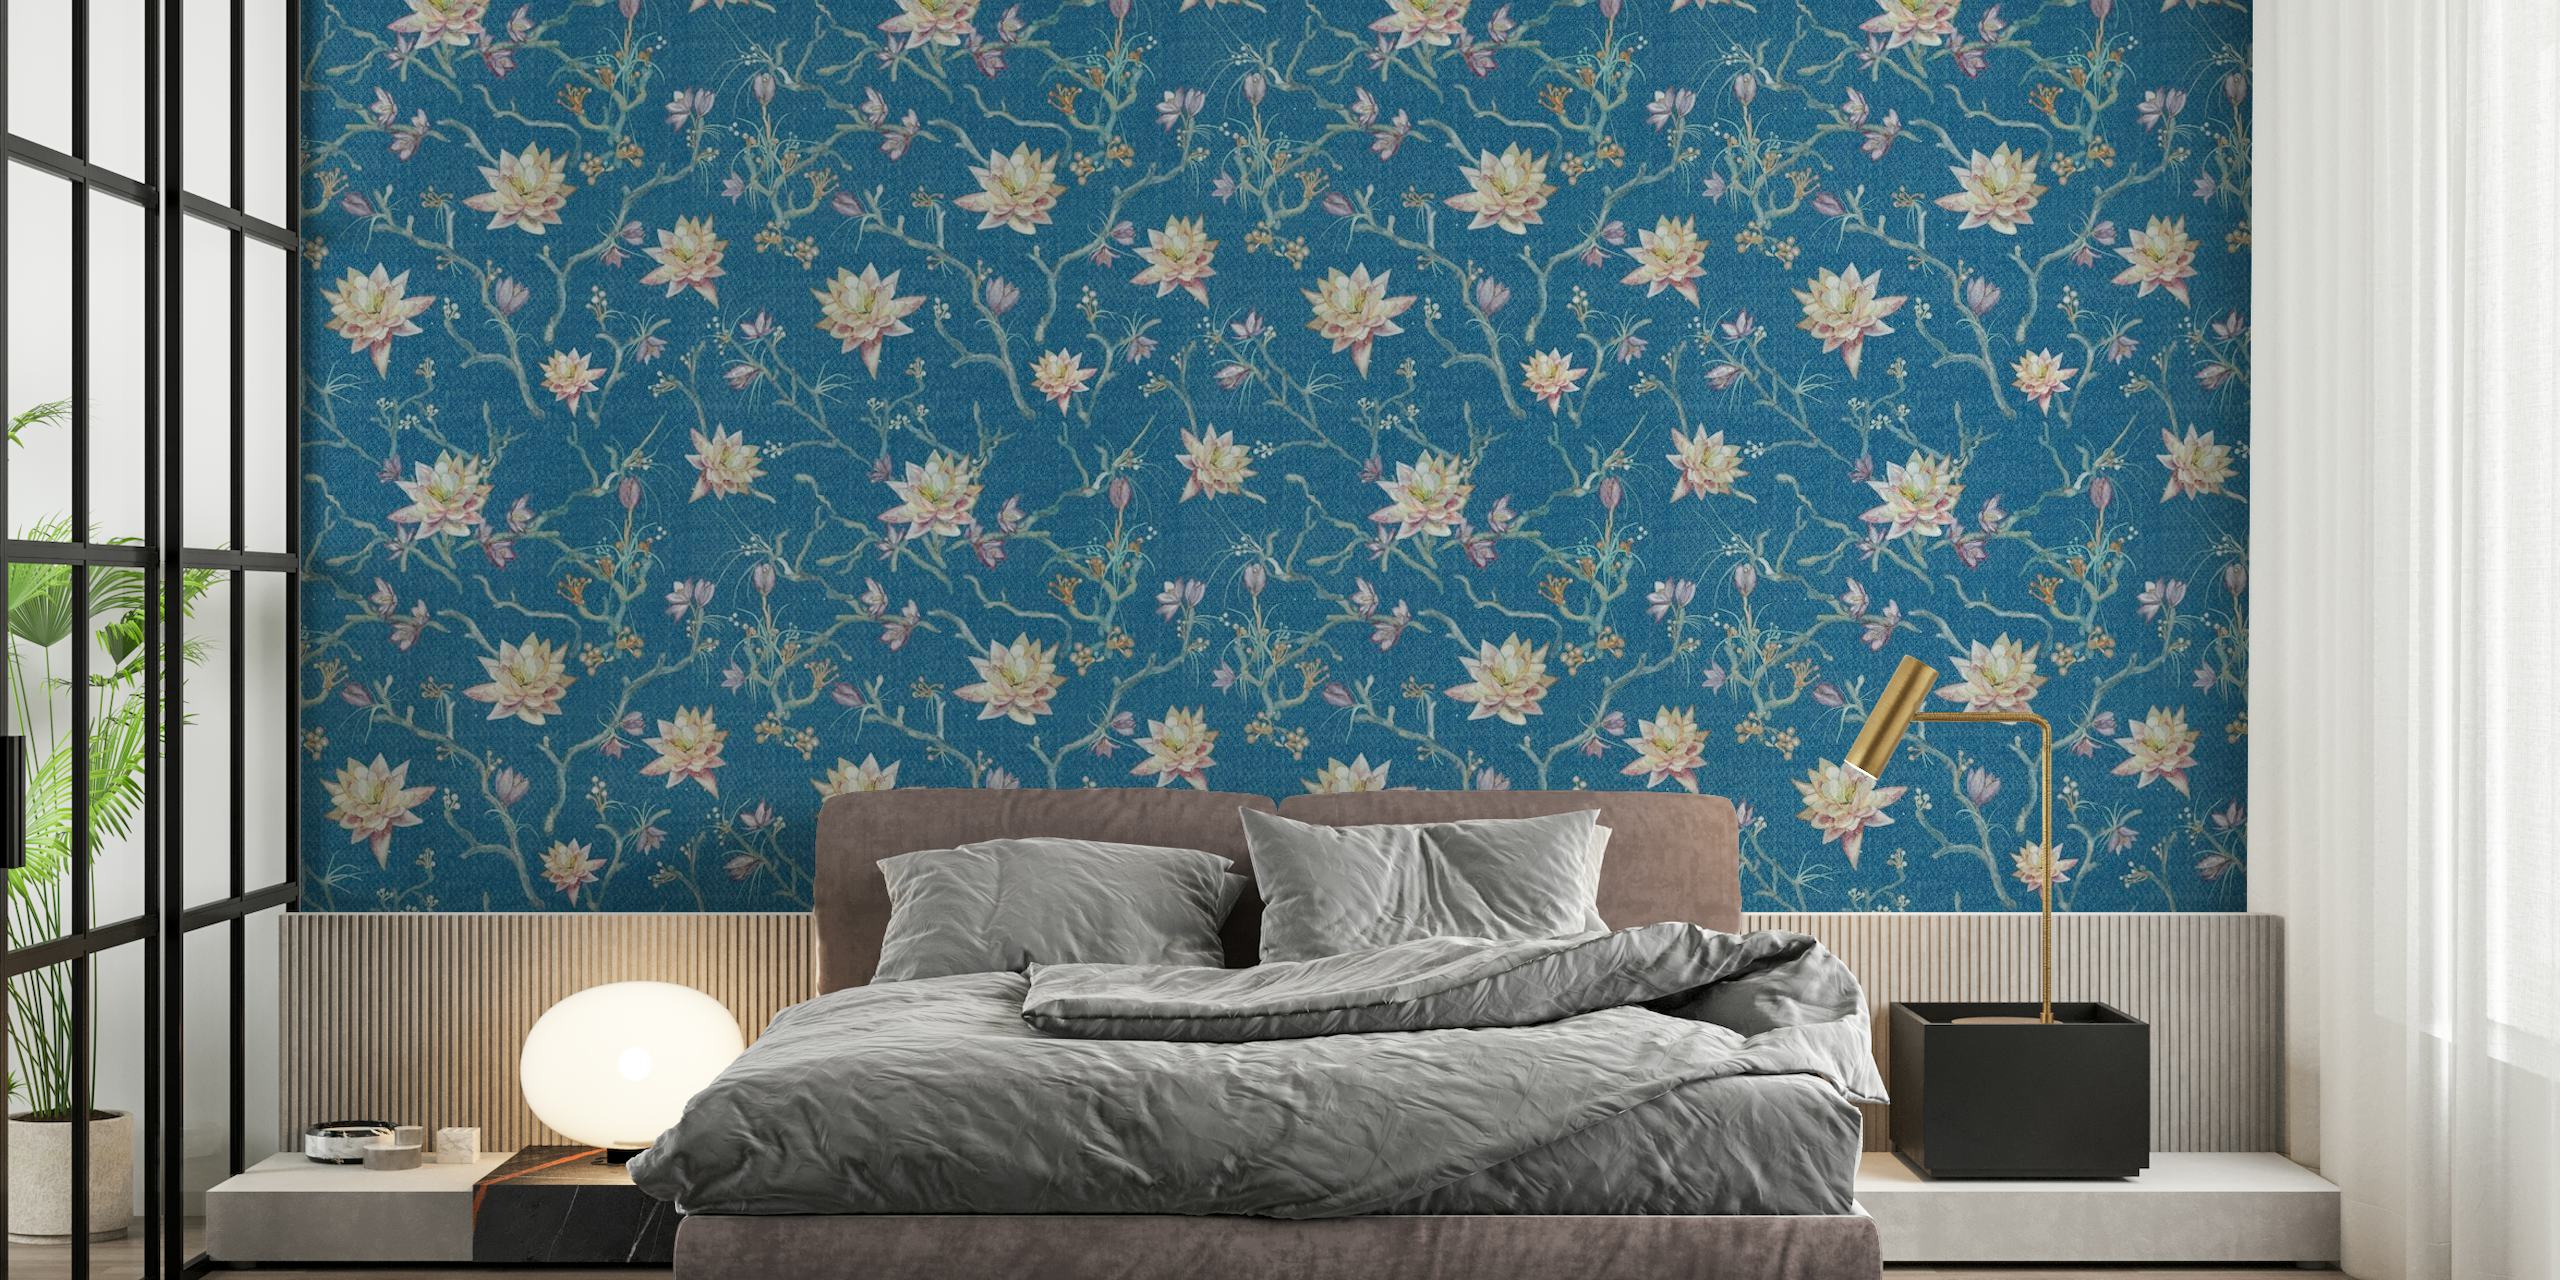 Frühlingslotus-Wandbild mit blauem Hintergrund und weiß blühenden Lotusblumen